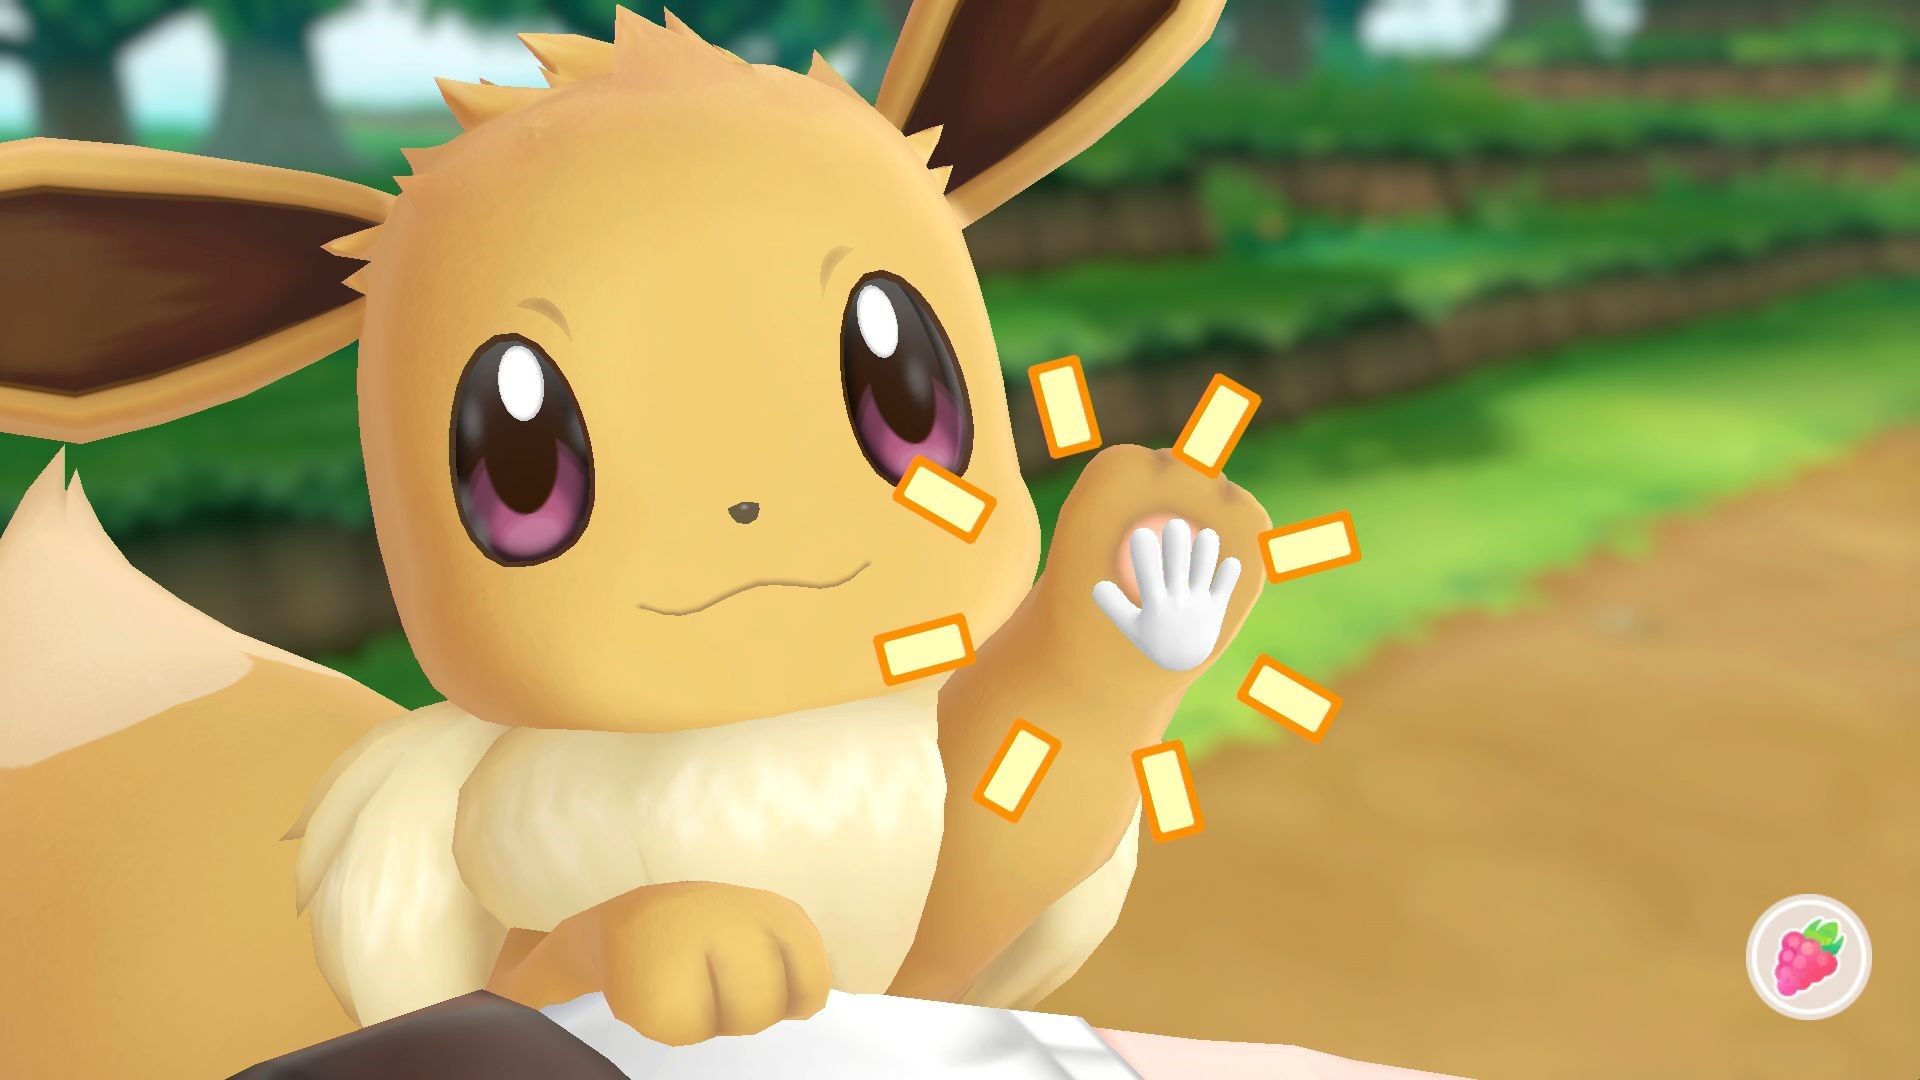 Japanese Promo Image Reveals Possible 'Pokémon: Let's Go”